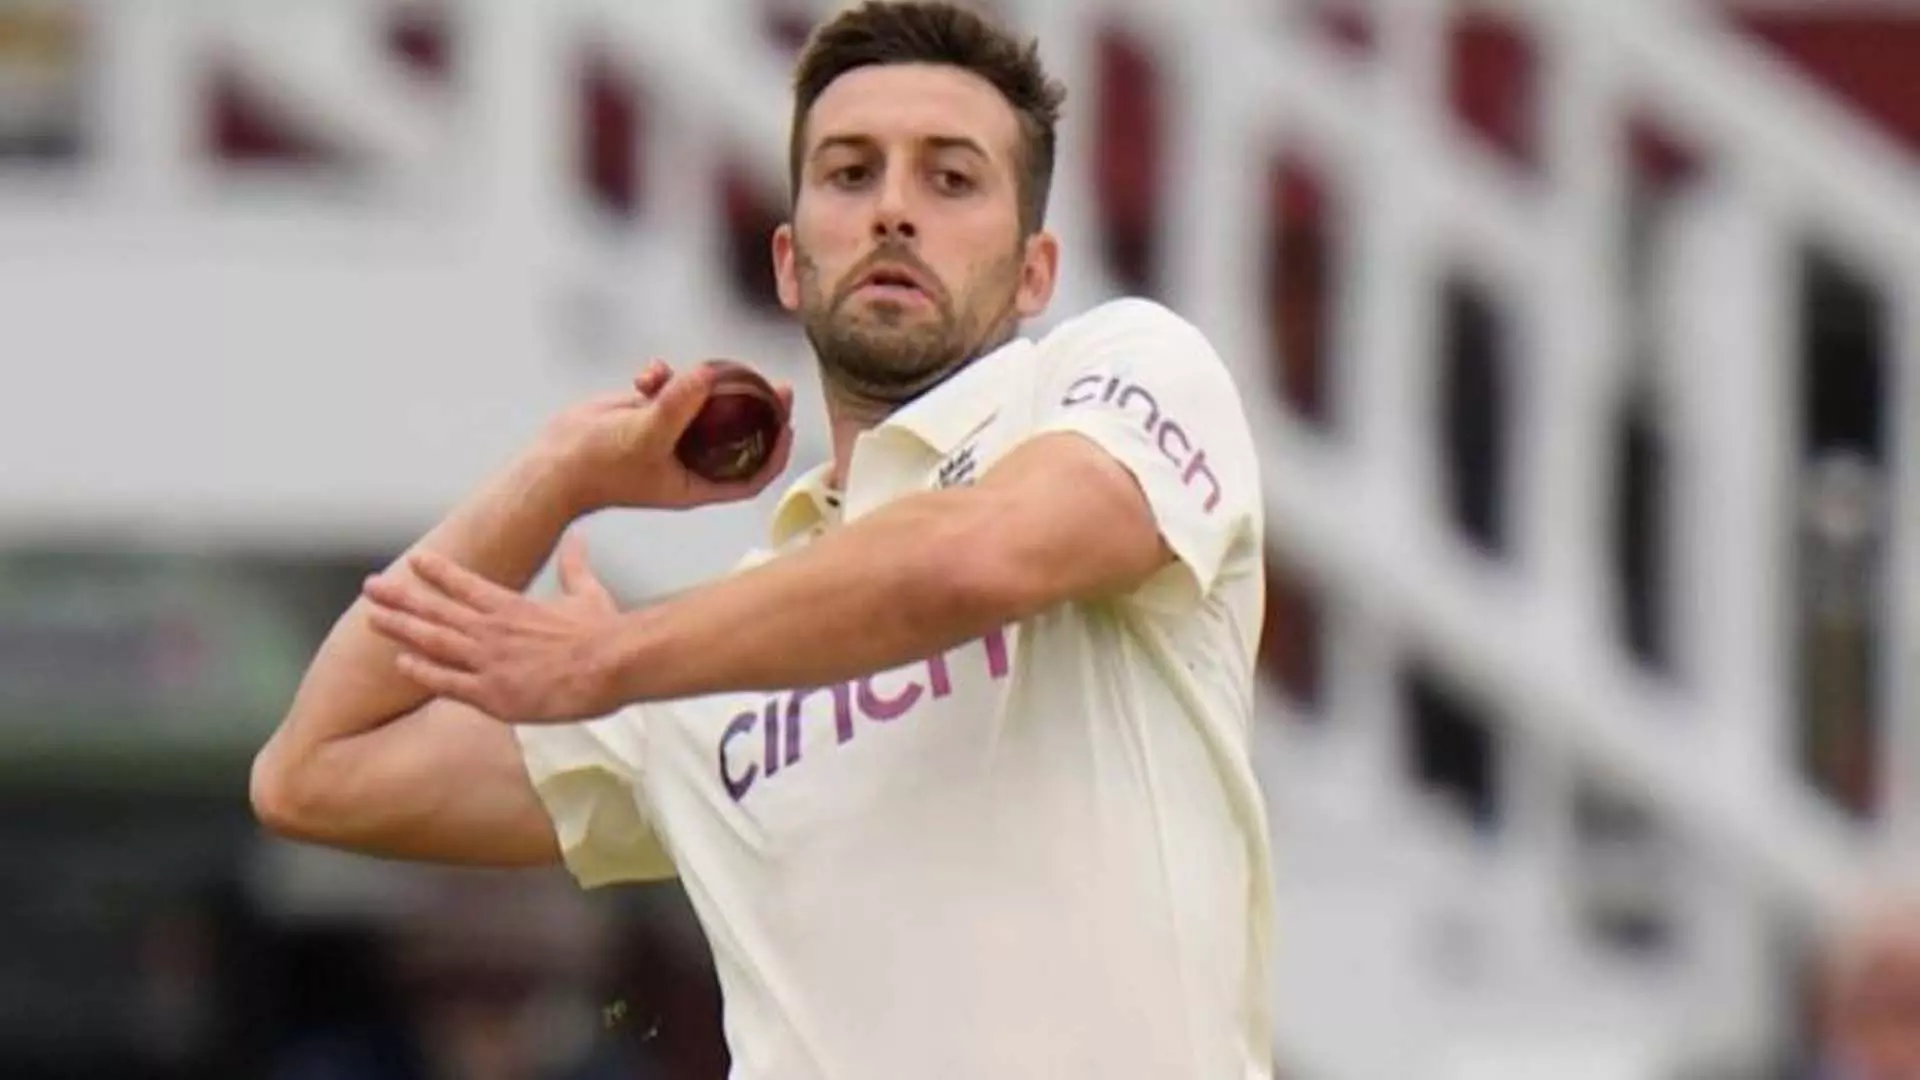 Nottingham: वेस्टइंडीज के खिलाफ दूसरे टेस्ट के लिए तेज गेंदबाज मार्क वुड की इंग्लैंड टीम में वापसी